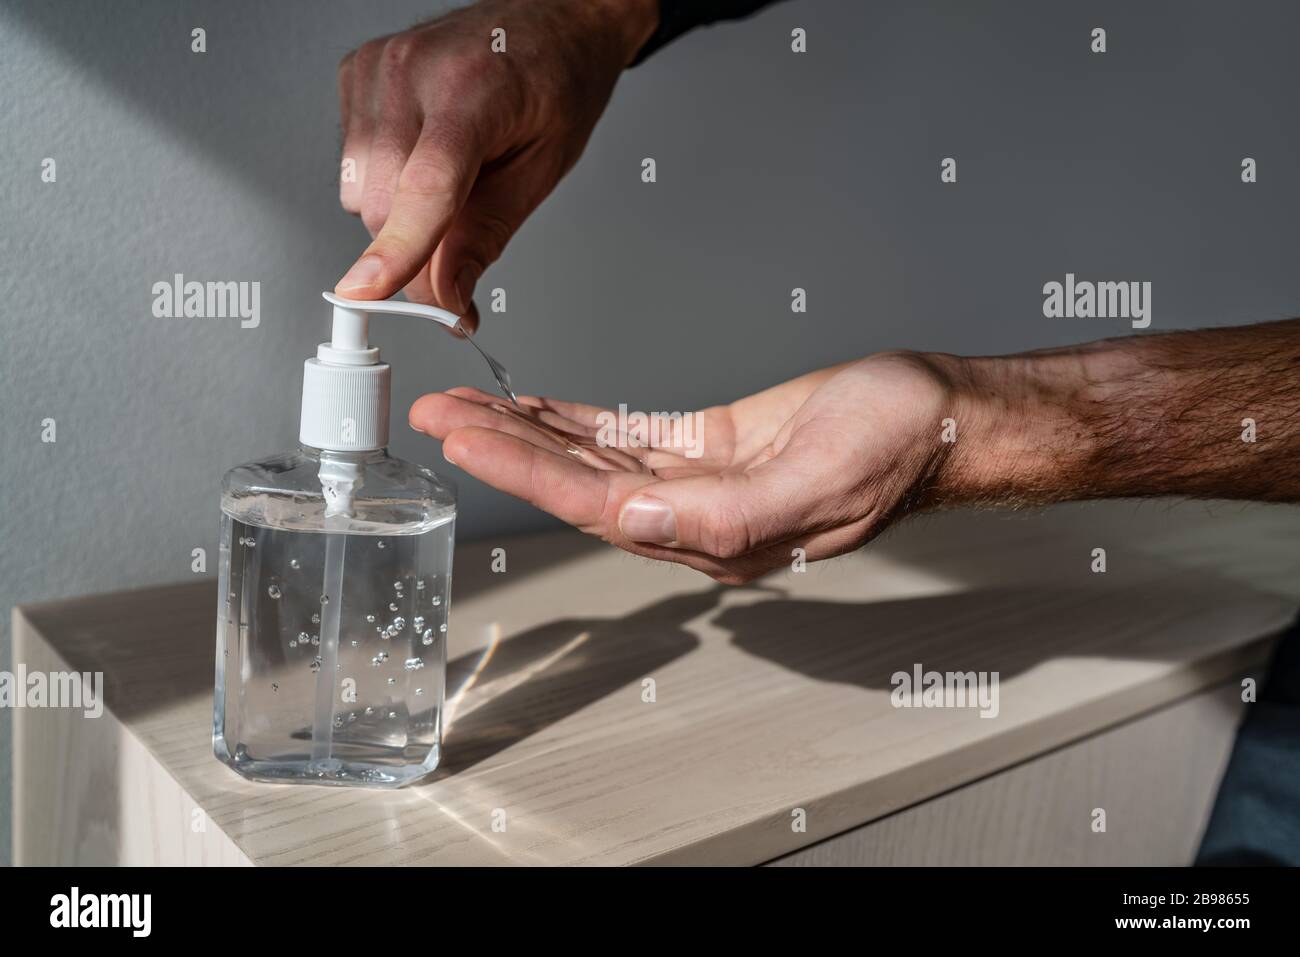 Flacon de désinfectant pour les mains, homme utilisant un gel de gel de déposition pour corona Virus mains hygiène coronavirus COVID-19 prévention de la pandémie Banque D'Images